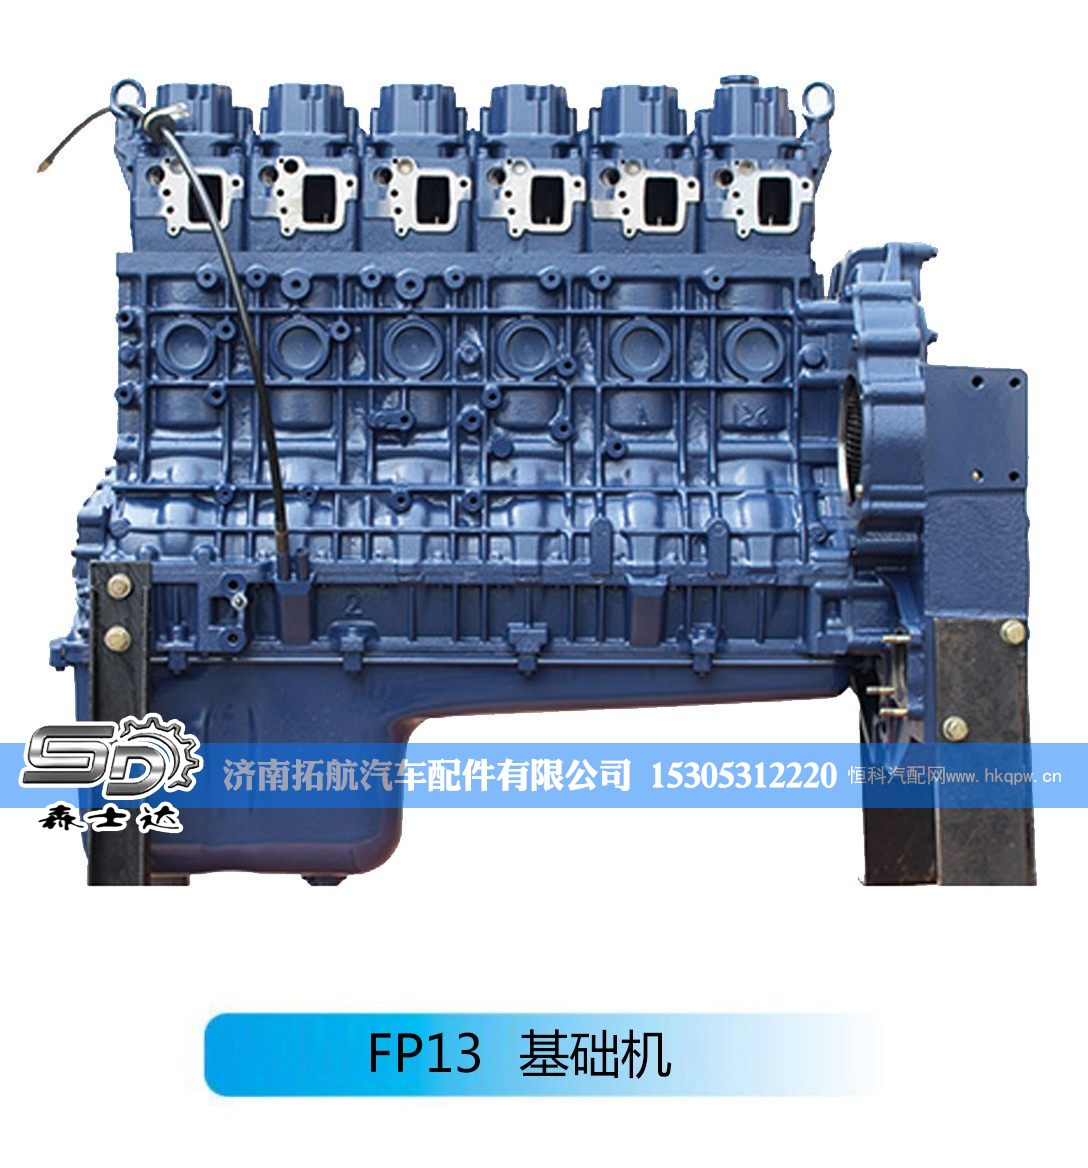 潍柴系列柴油发动机--FP13基础机【森士达】/